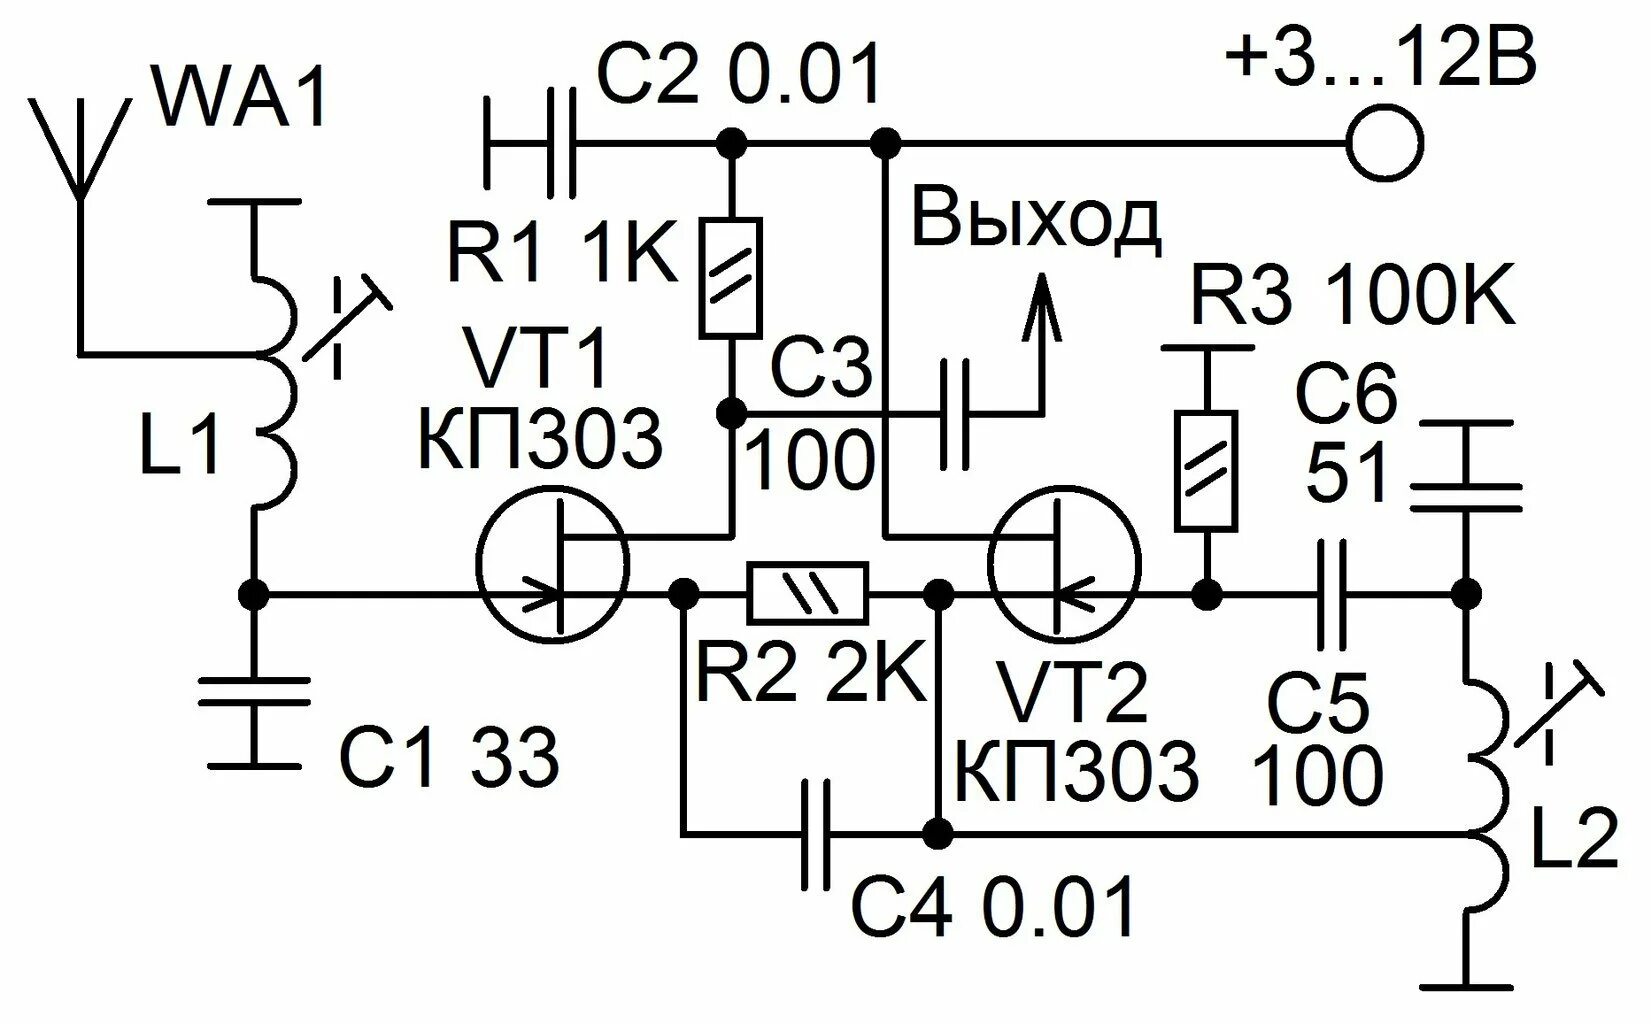 Простые укв. Схема УКВ 88-108мгц приемника на транзисторах. Fm радиоприемник на транзисторах 88 108 МГЦ. Схема приемника прямого усиления на 27 МГЦ. Схема конвертера УКВ fm на транзисторах.